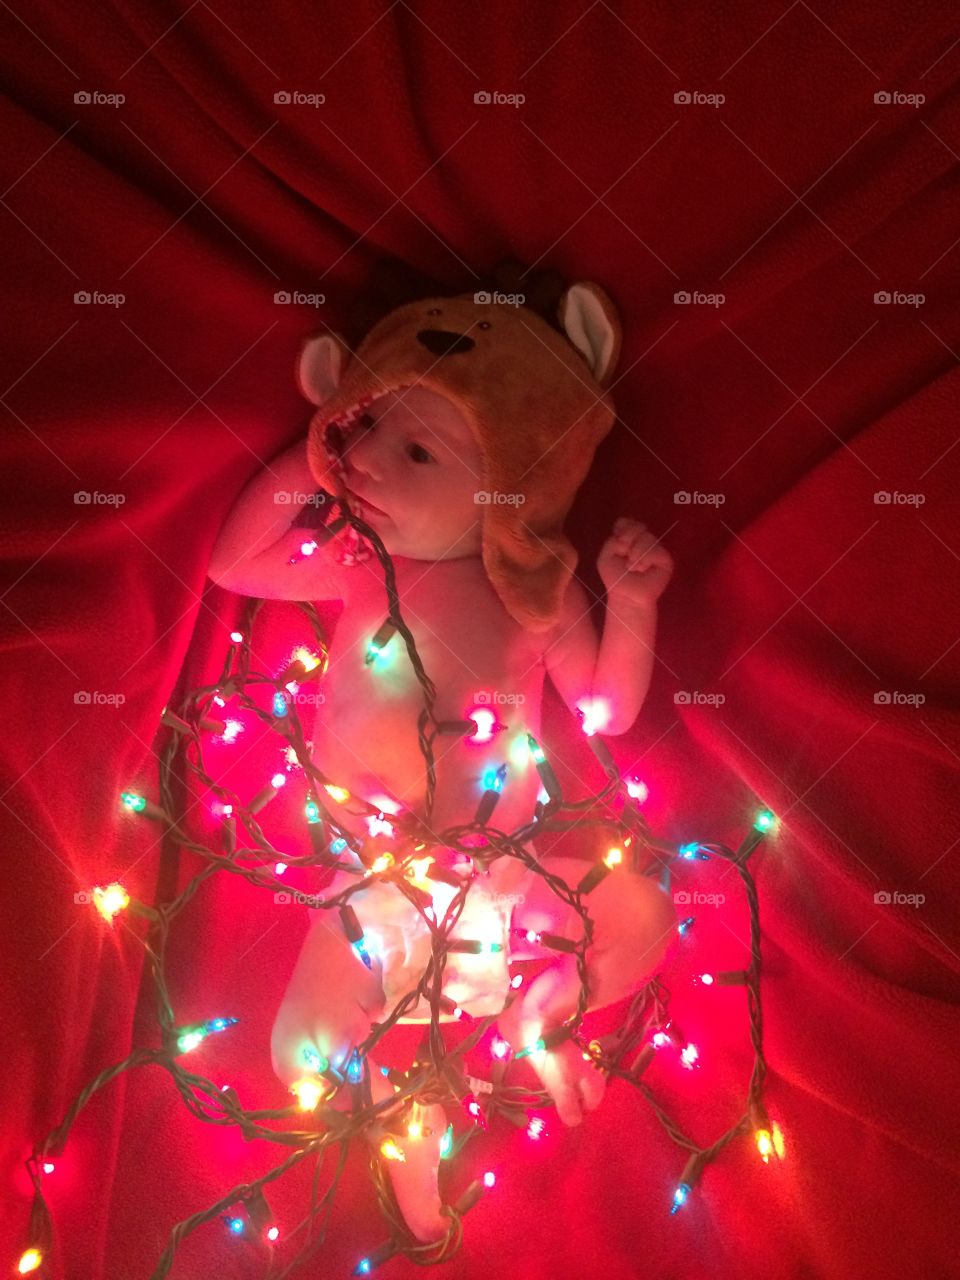 Reindeer caught in headlights 